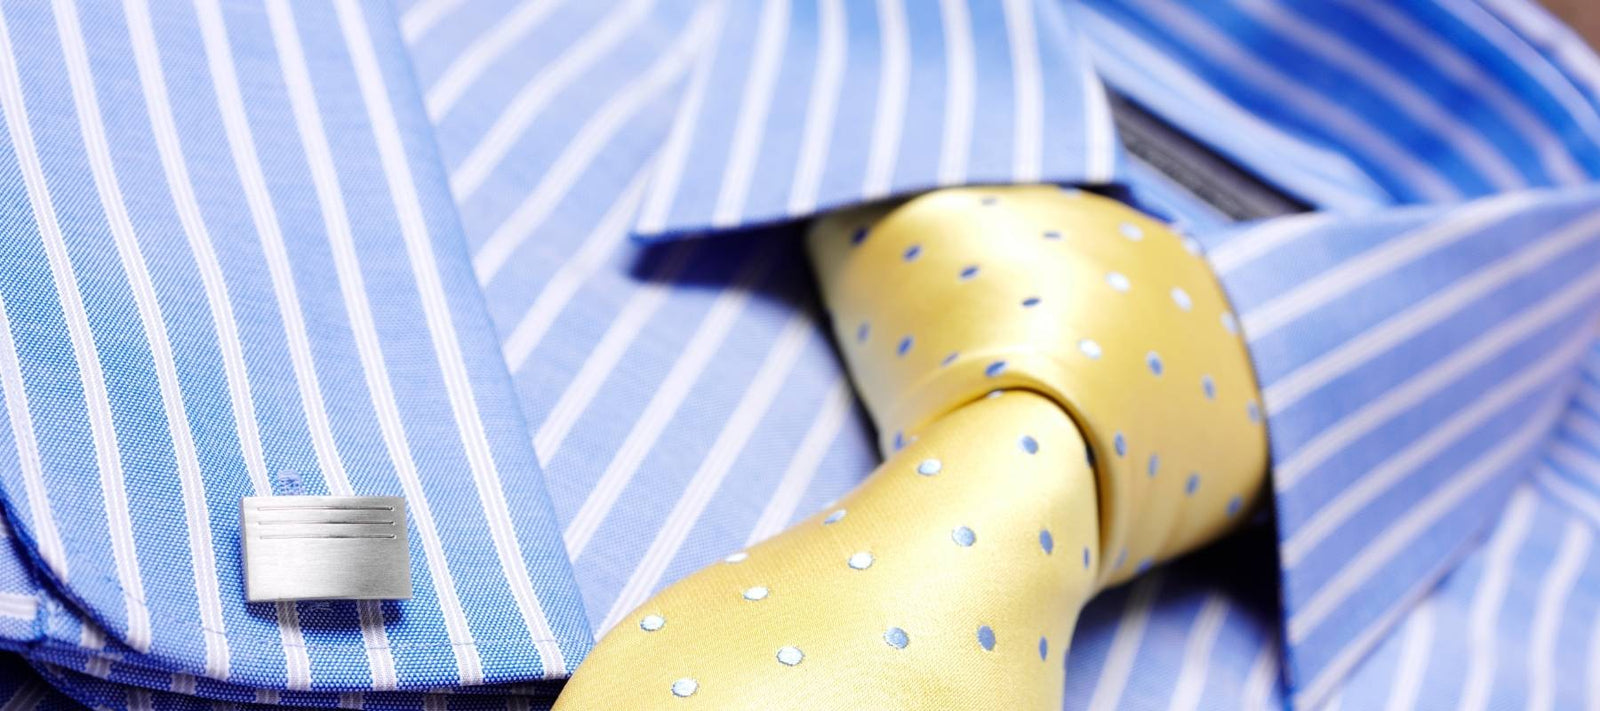 Cravate et chemise : Comment bien les assortir ?